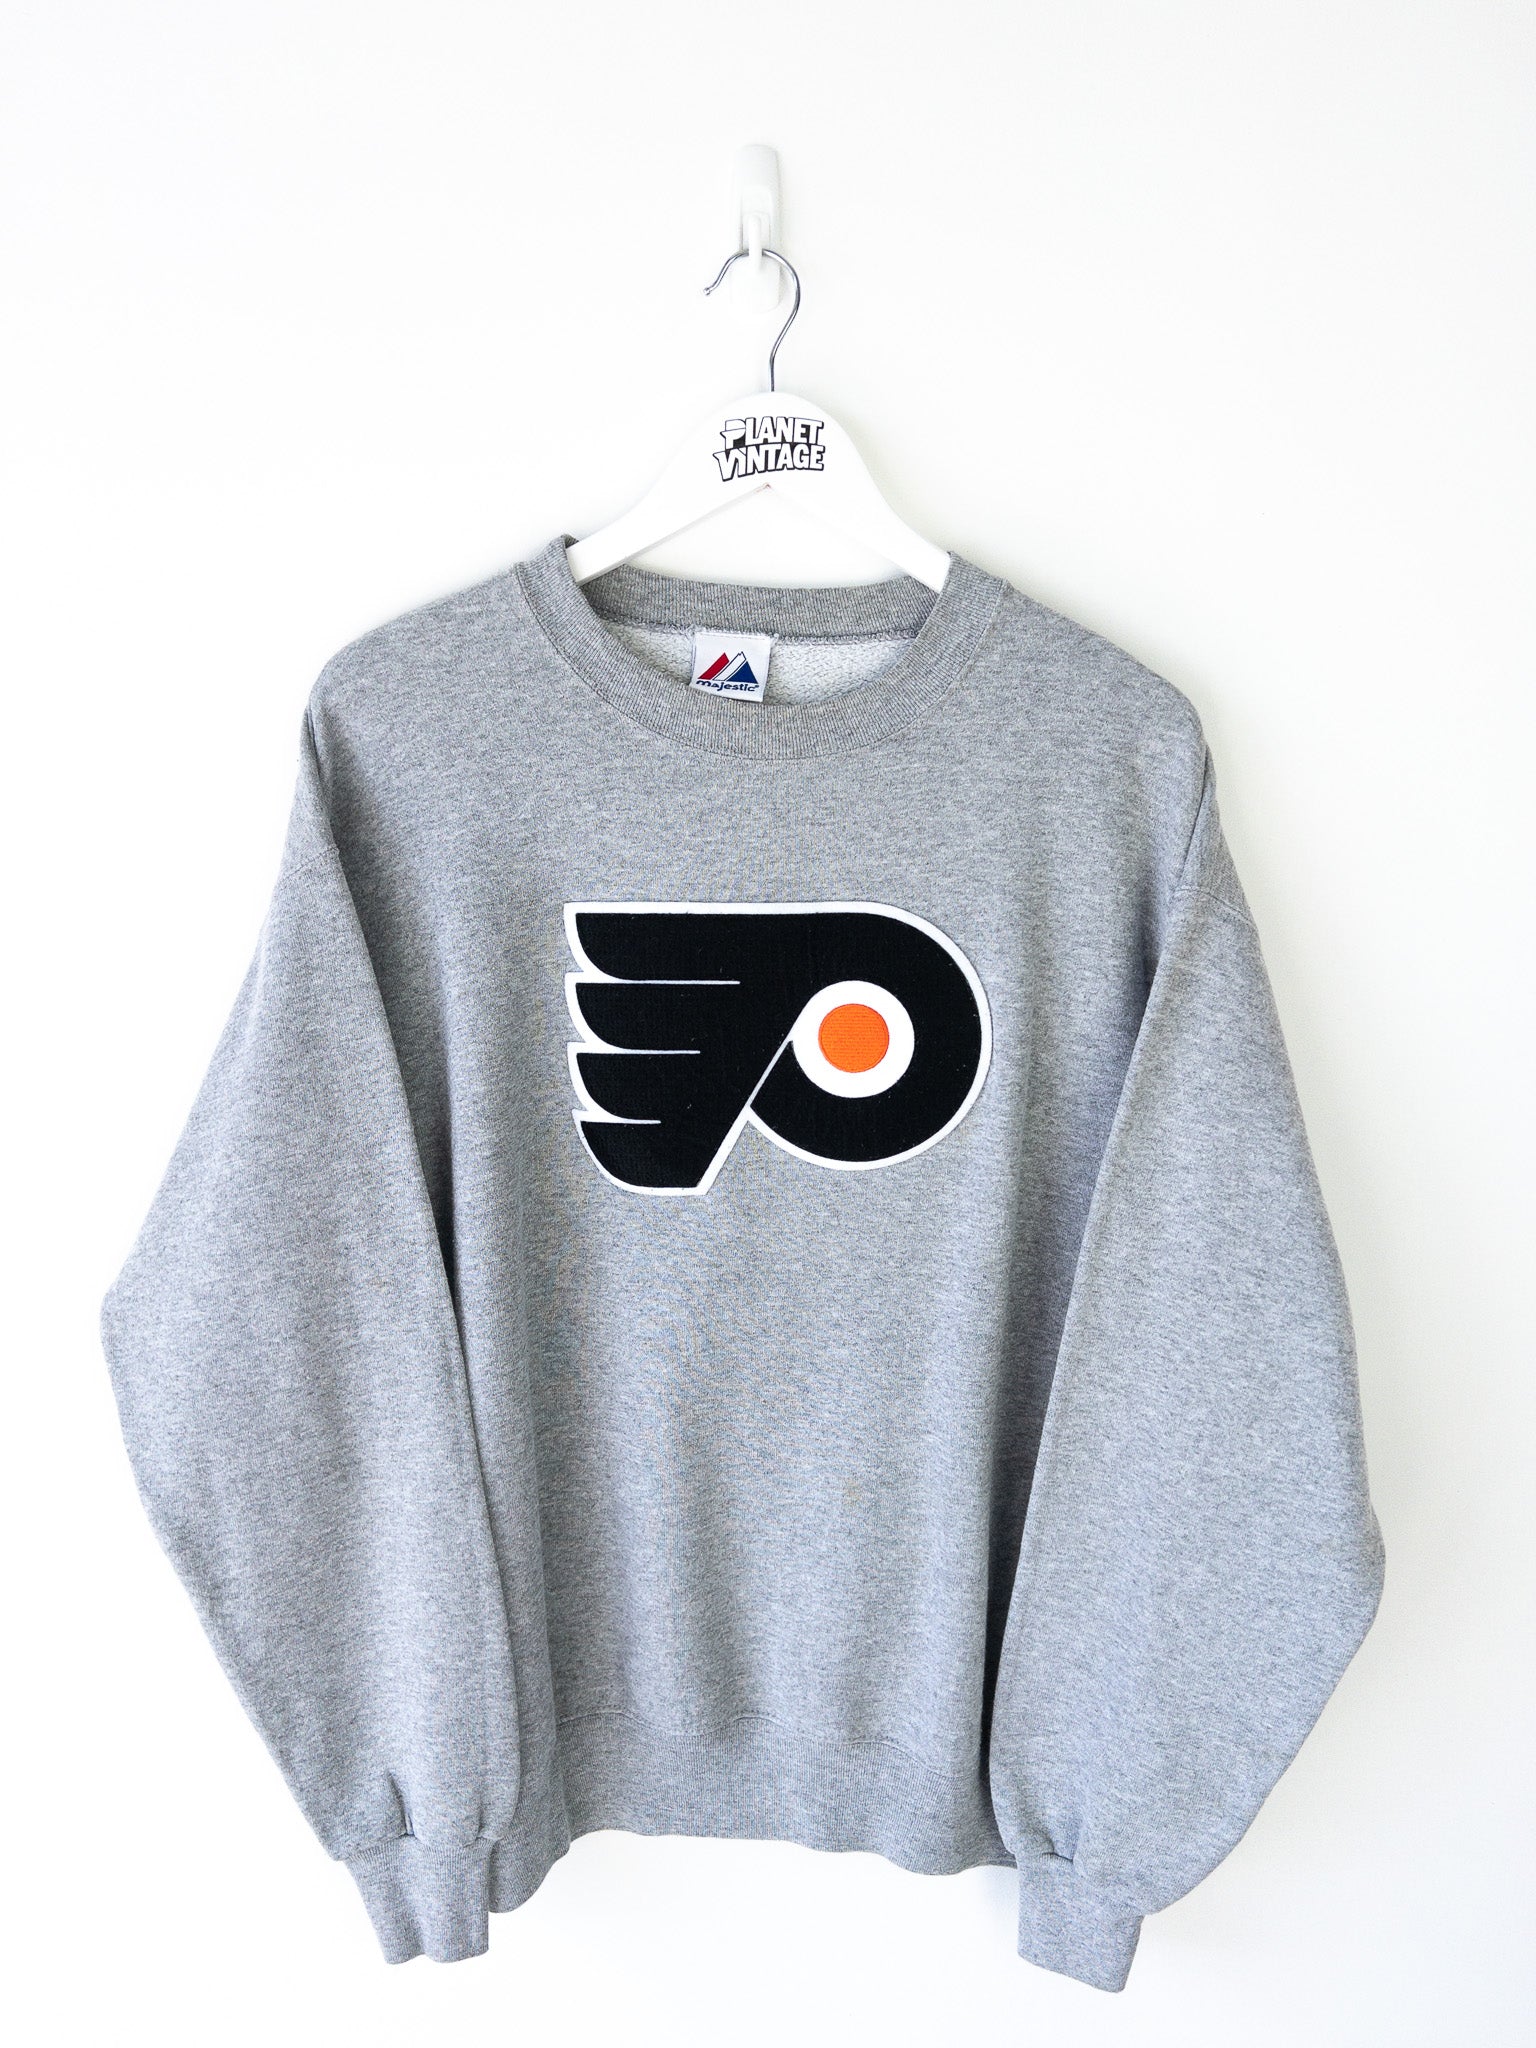 Vintage Philadelphia Flyers Sweatshirt (L)